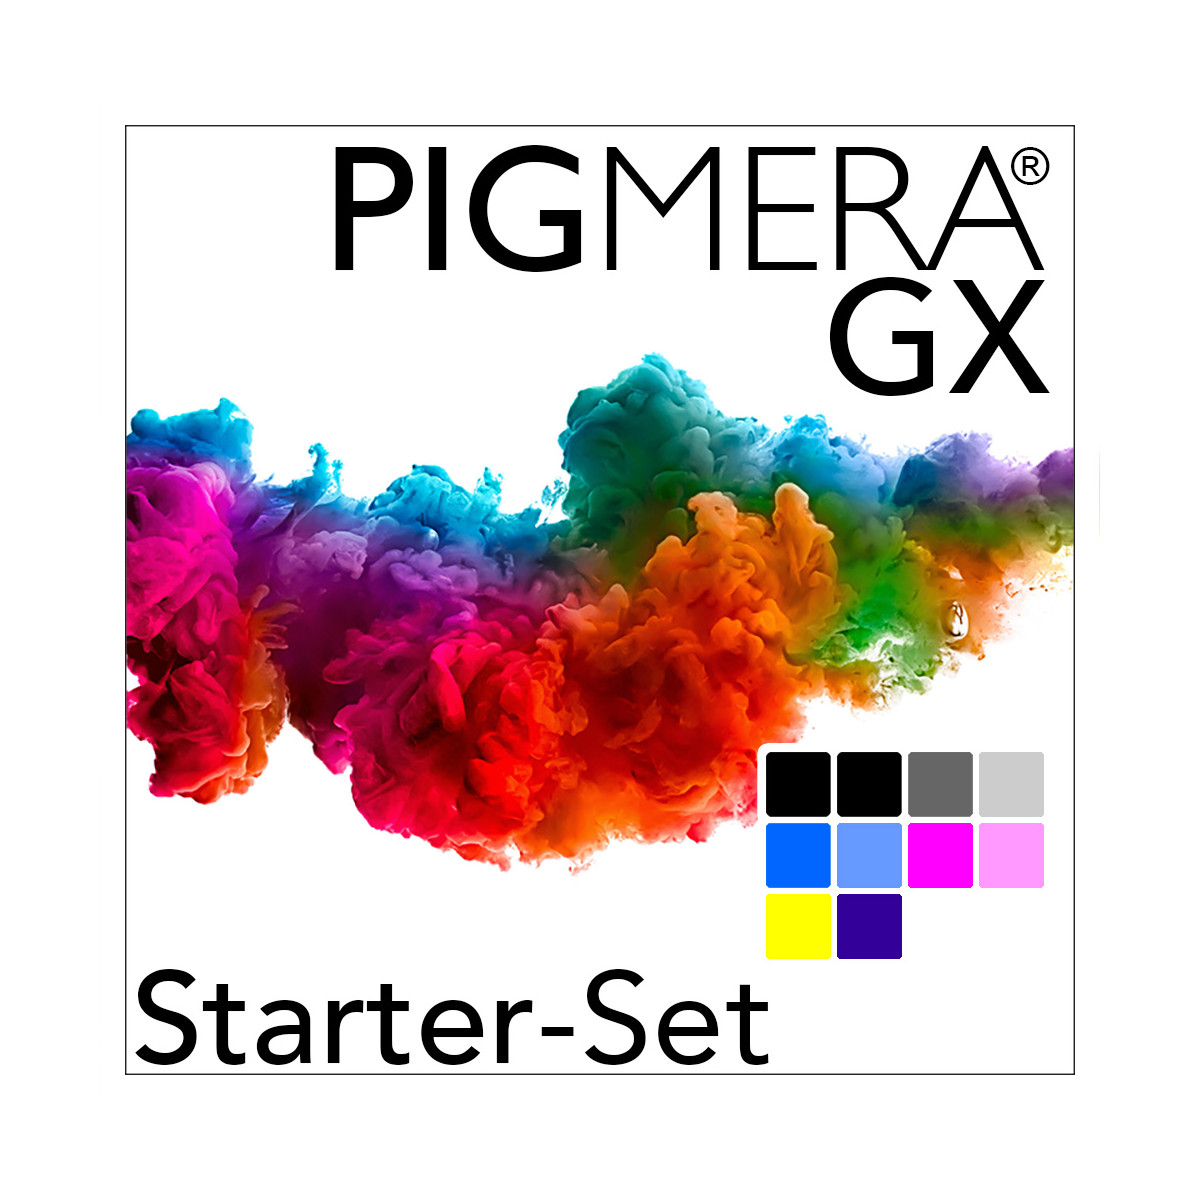 Starter-Set mit Refillpatronen - Pigmera GX SC-P700 (ohne...